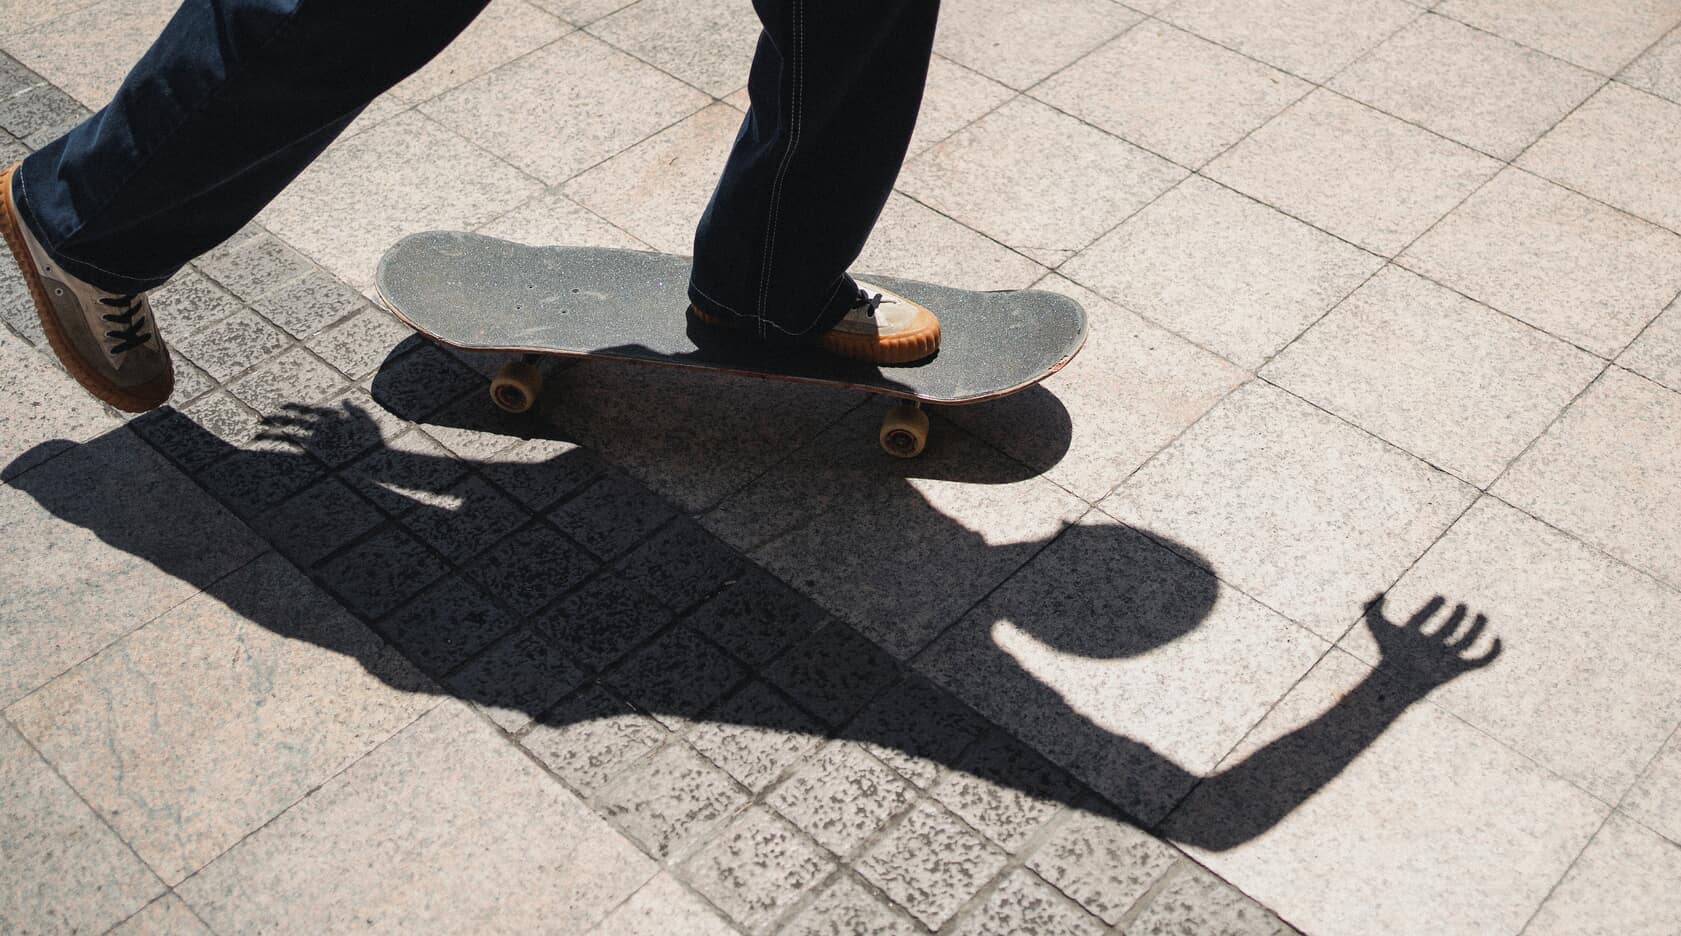 skateboarding in Japan